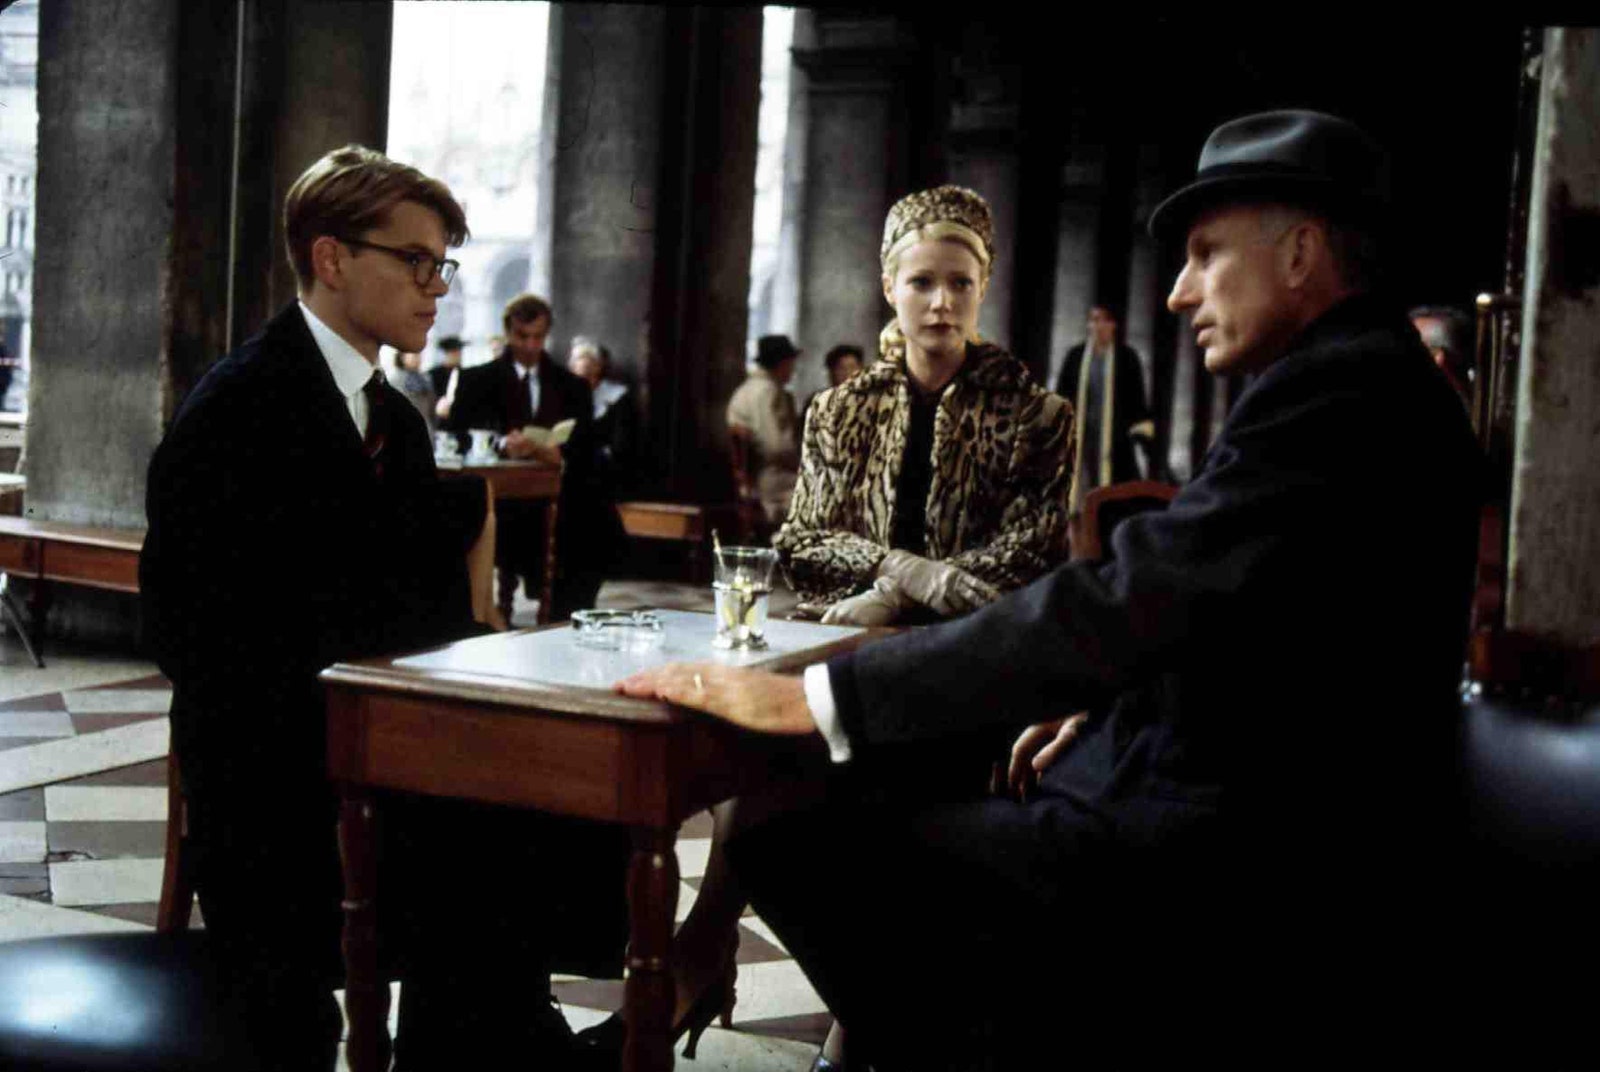 Мэтт Деймон Гвинет Пэлтроу и Джеймс Ребхорн в сцене из фильма “Талантливый мистер Рипли” снятой в кафе “Флориан”.